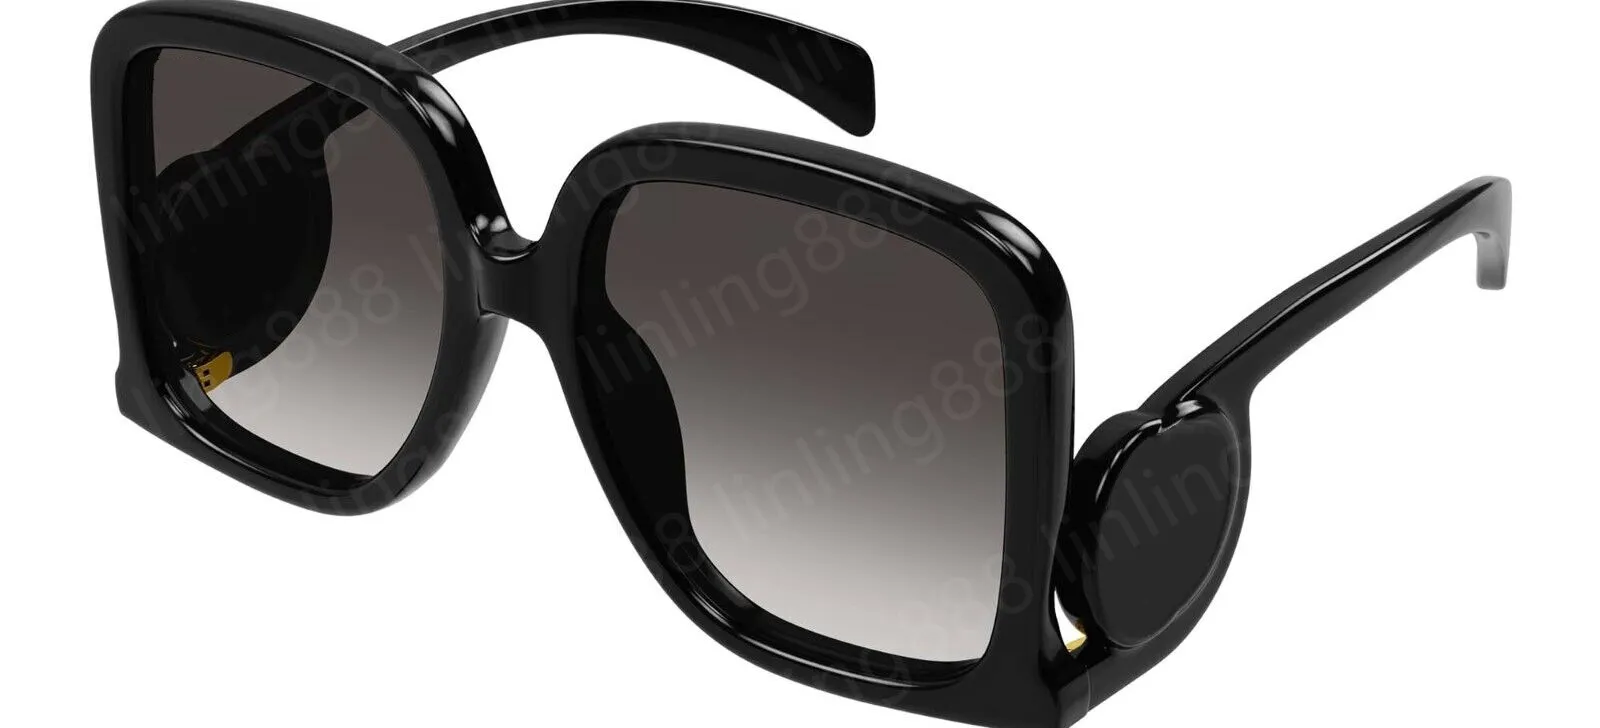 A112 1326 s Designer Modelo Masculino e Feminino Mesmo Estilo Óculos de Sol de Alta Qualidade com Caixa de Proteção UV Deigner Men' Women' Sunglae